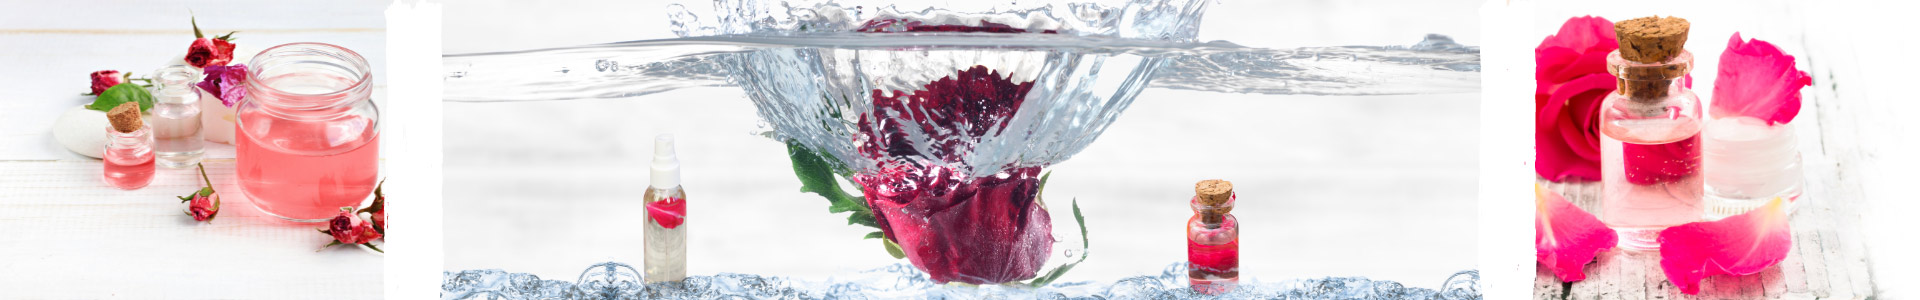 ANΘΟΝΕΡΑ: Ανθόνερο Τριαντάφυλλου (Ροδόνερο)